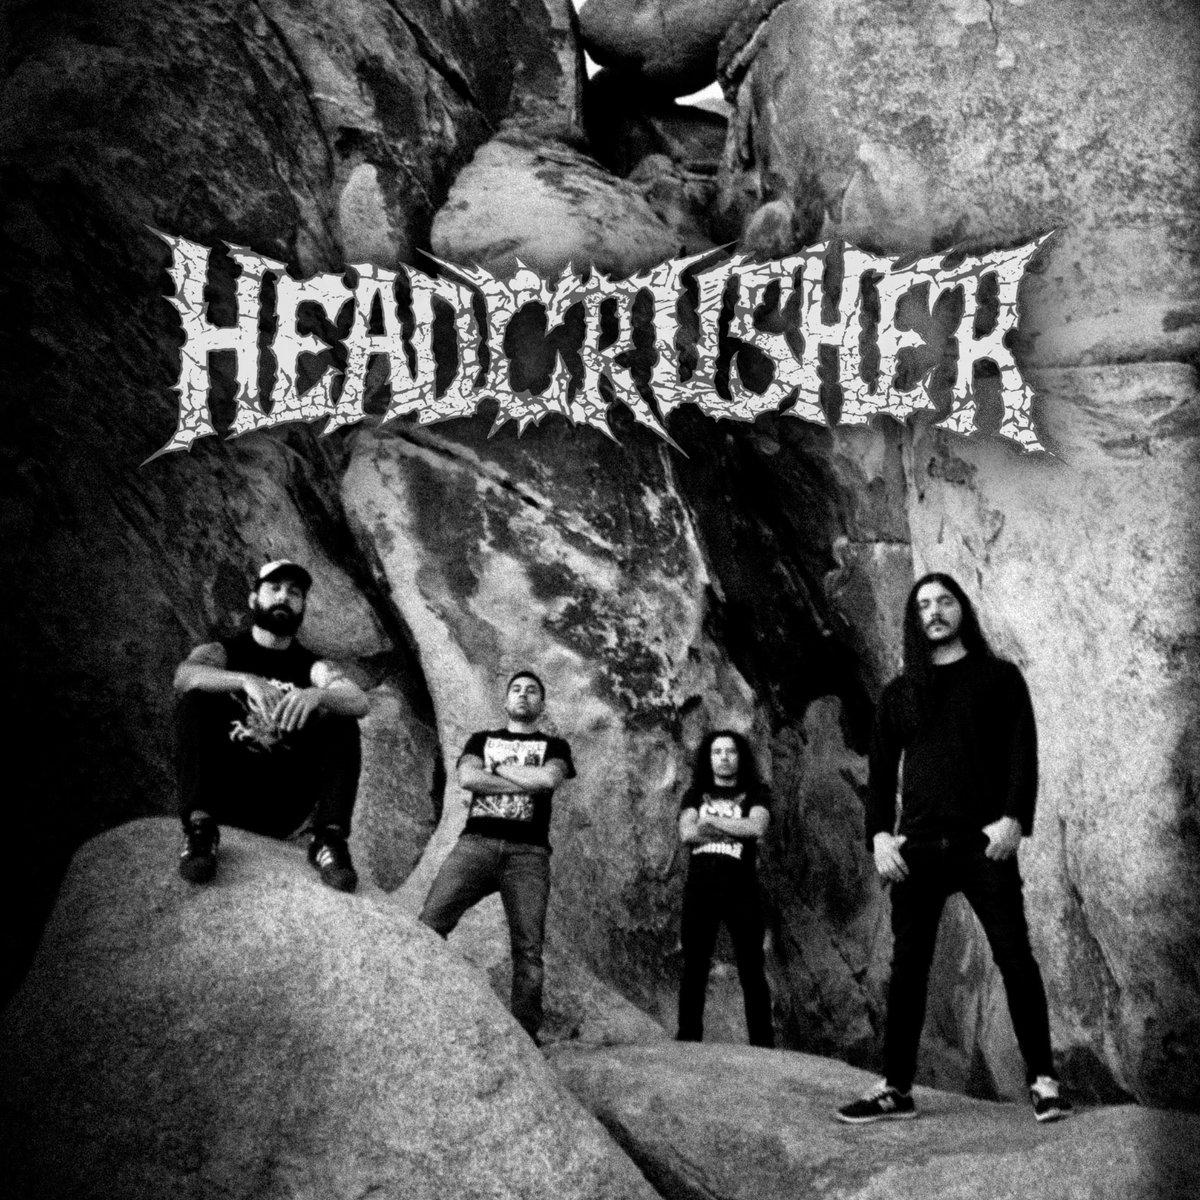 Headcrusher